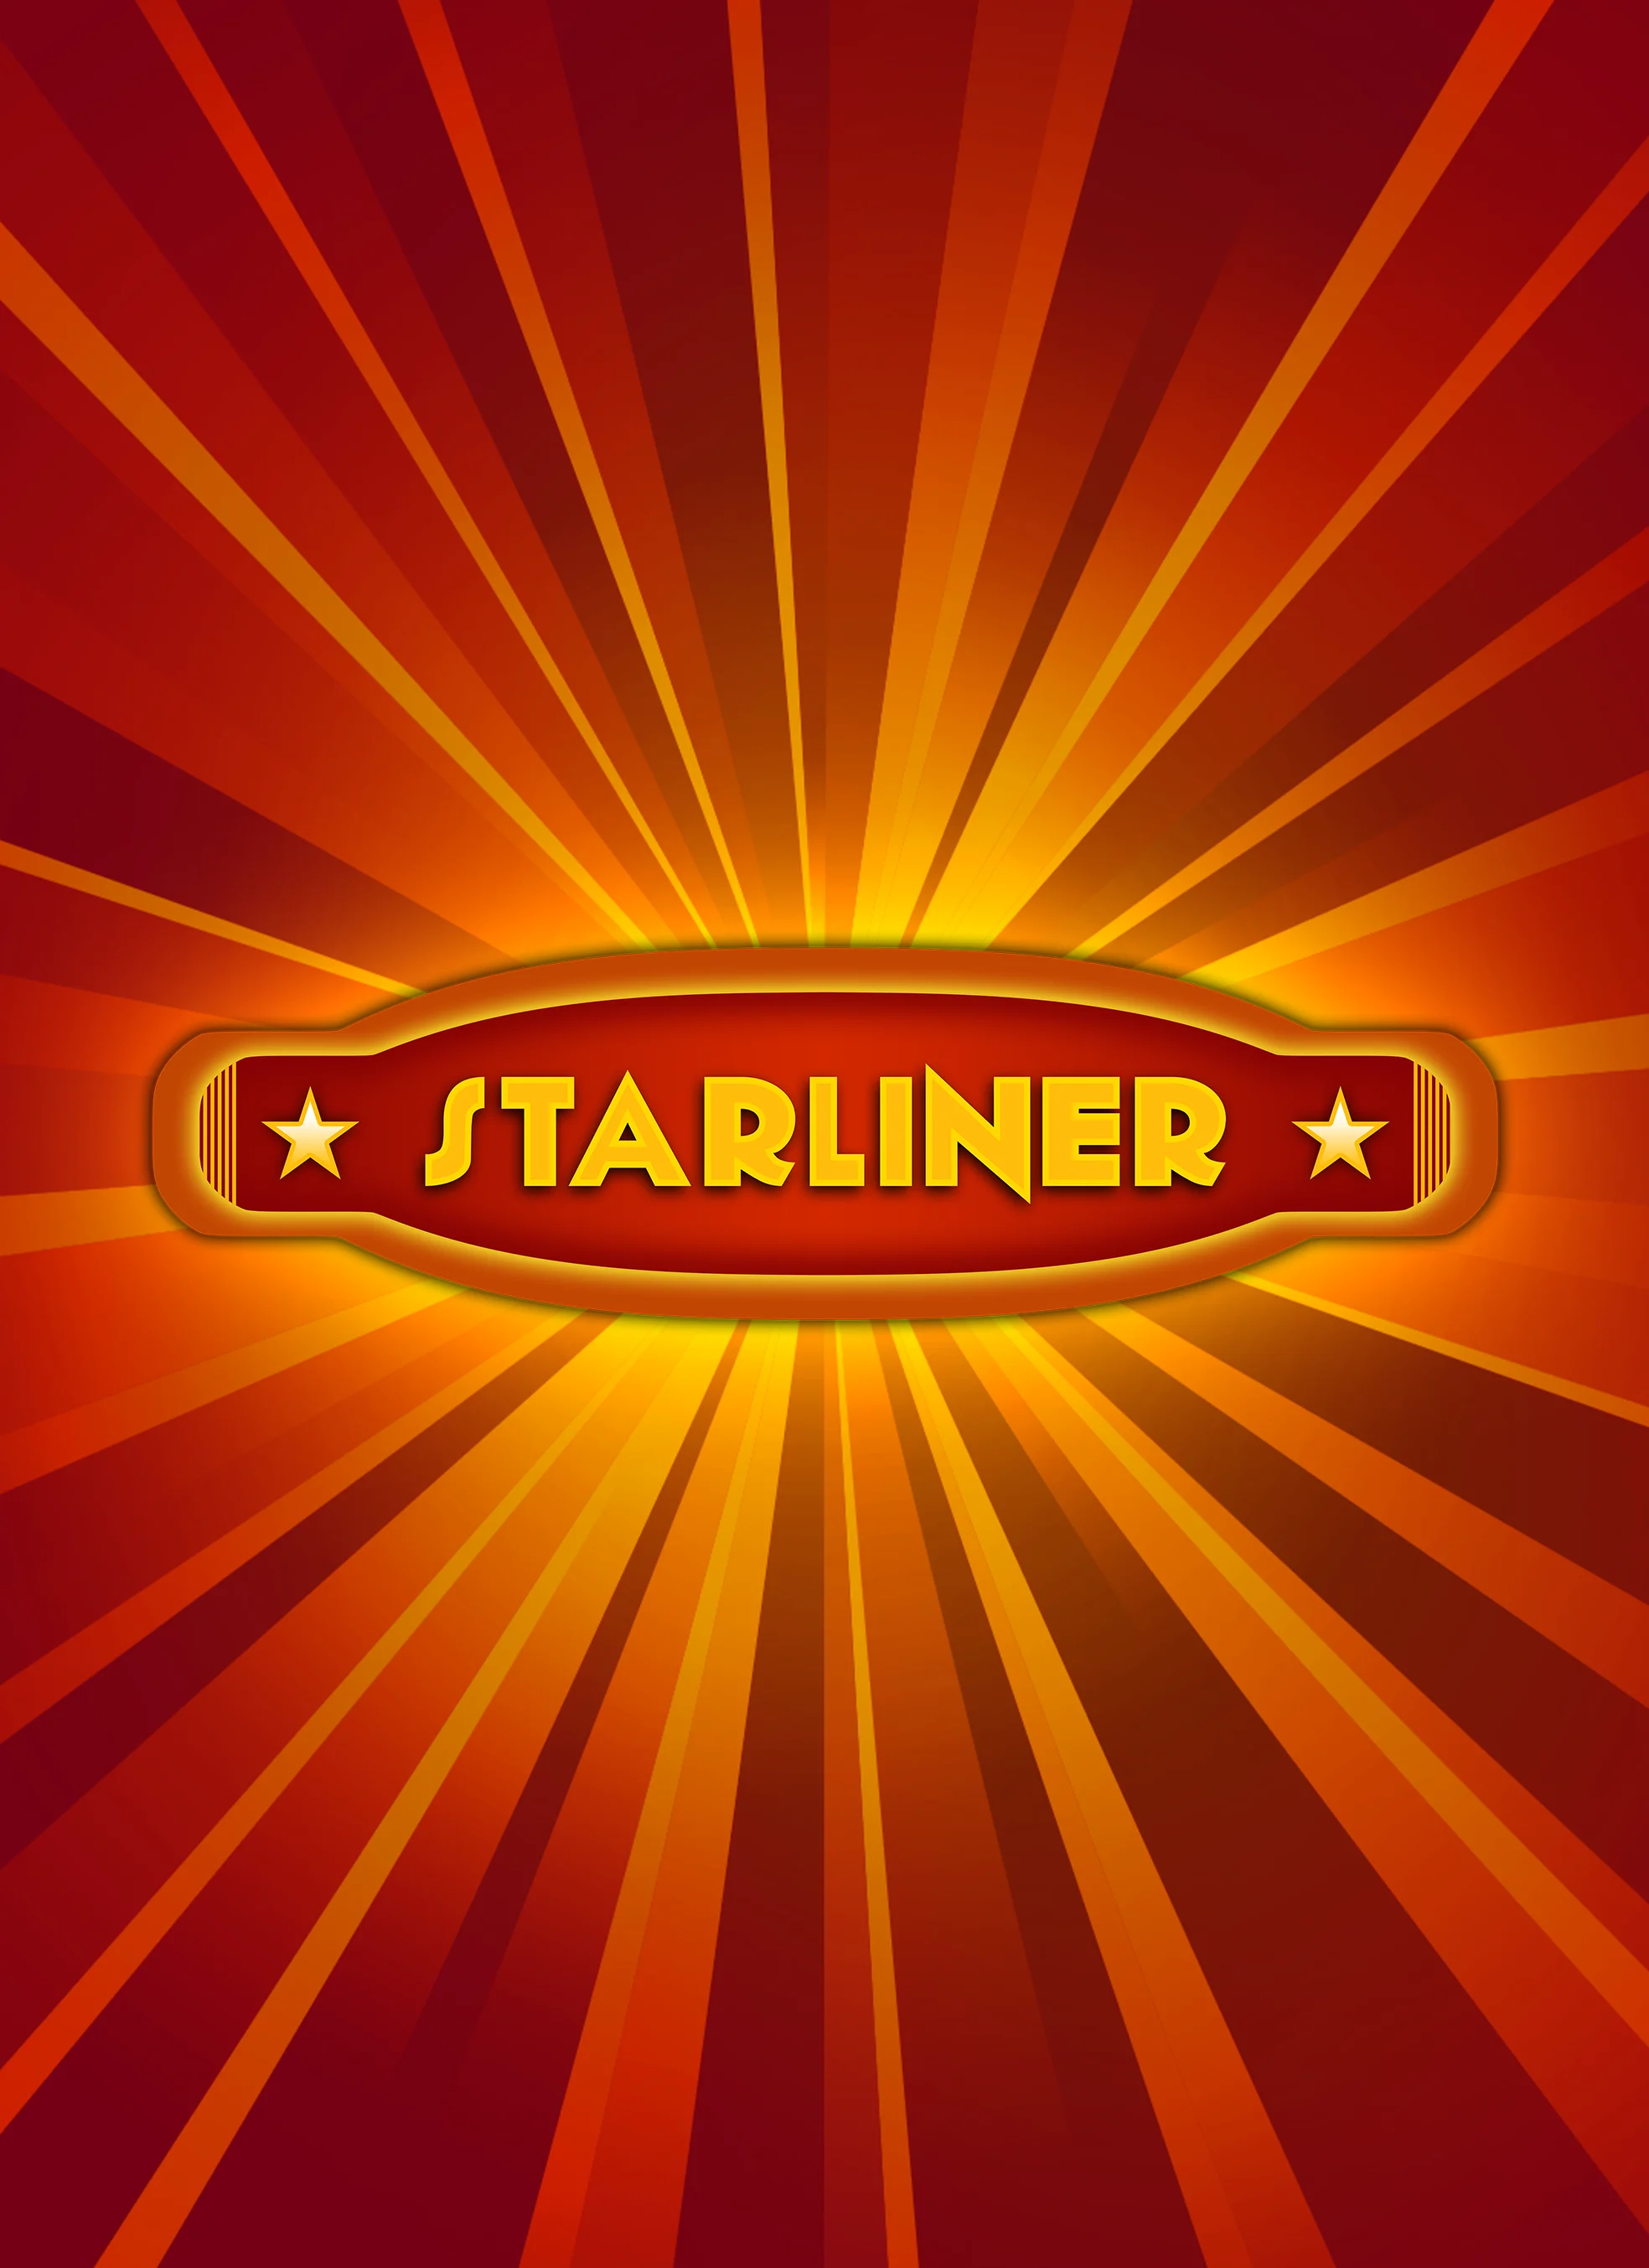 Jouer à Starliner sur le casino en ligne Madisoncasino.be